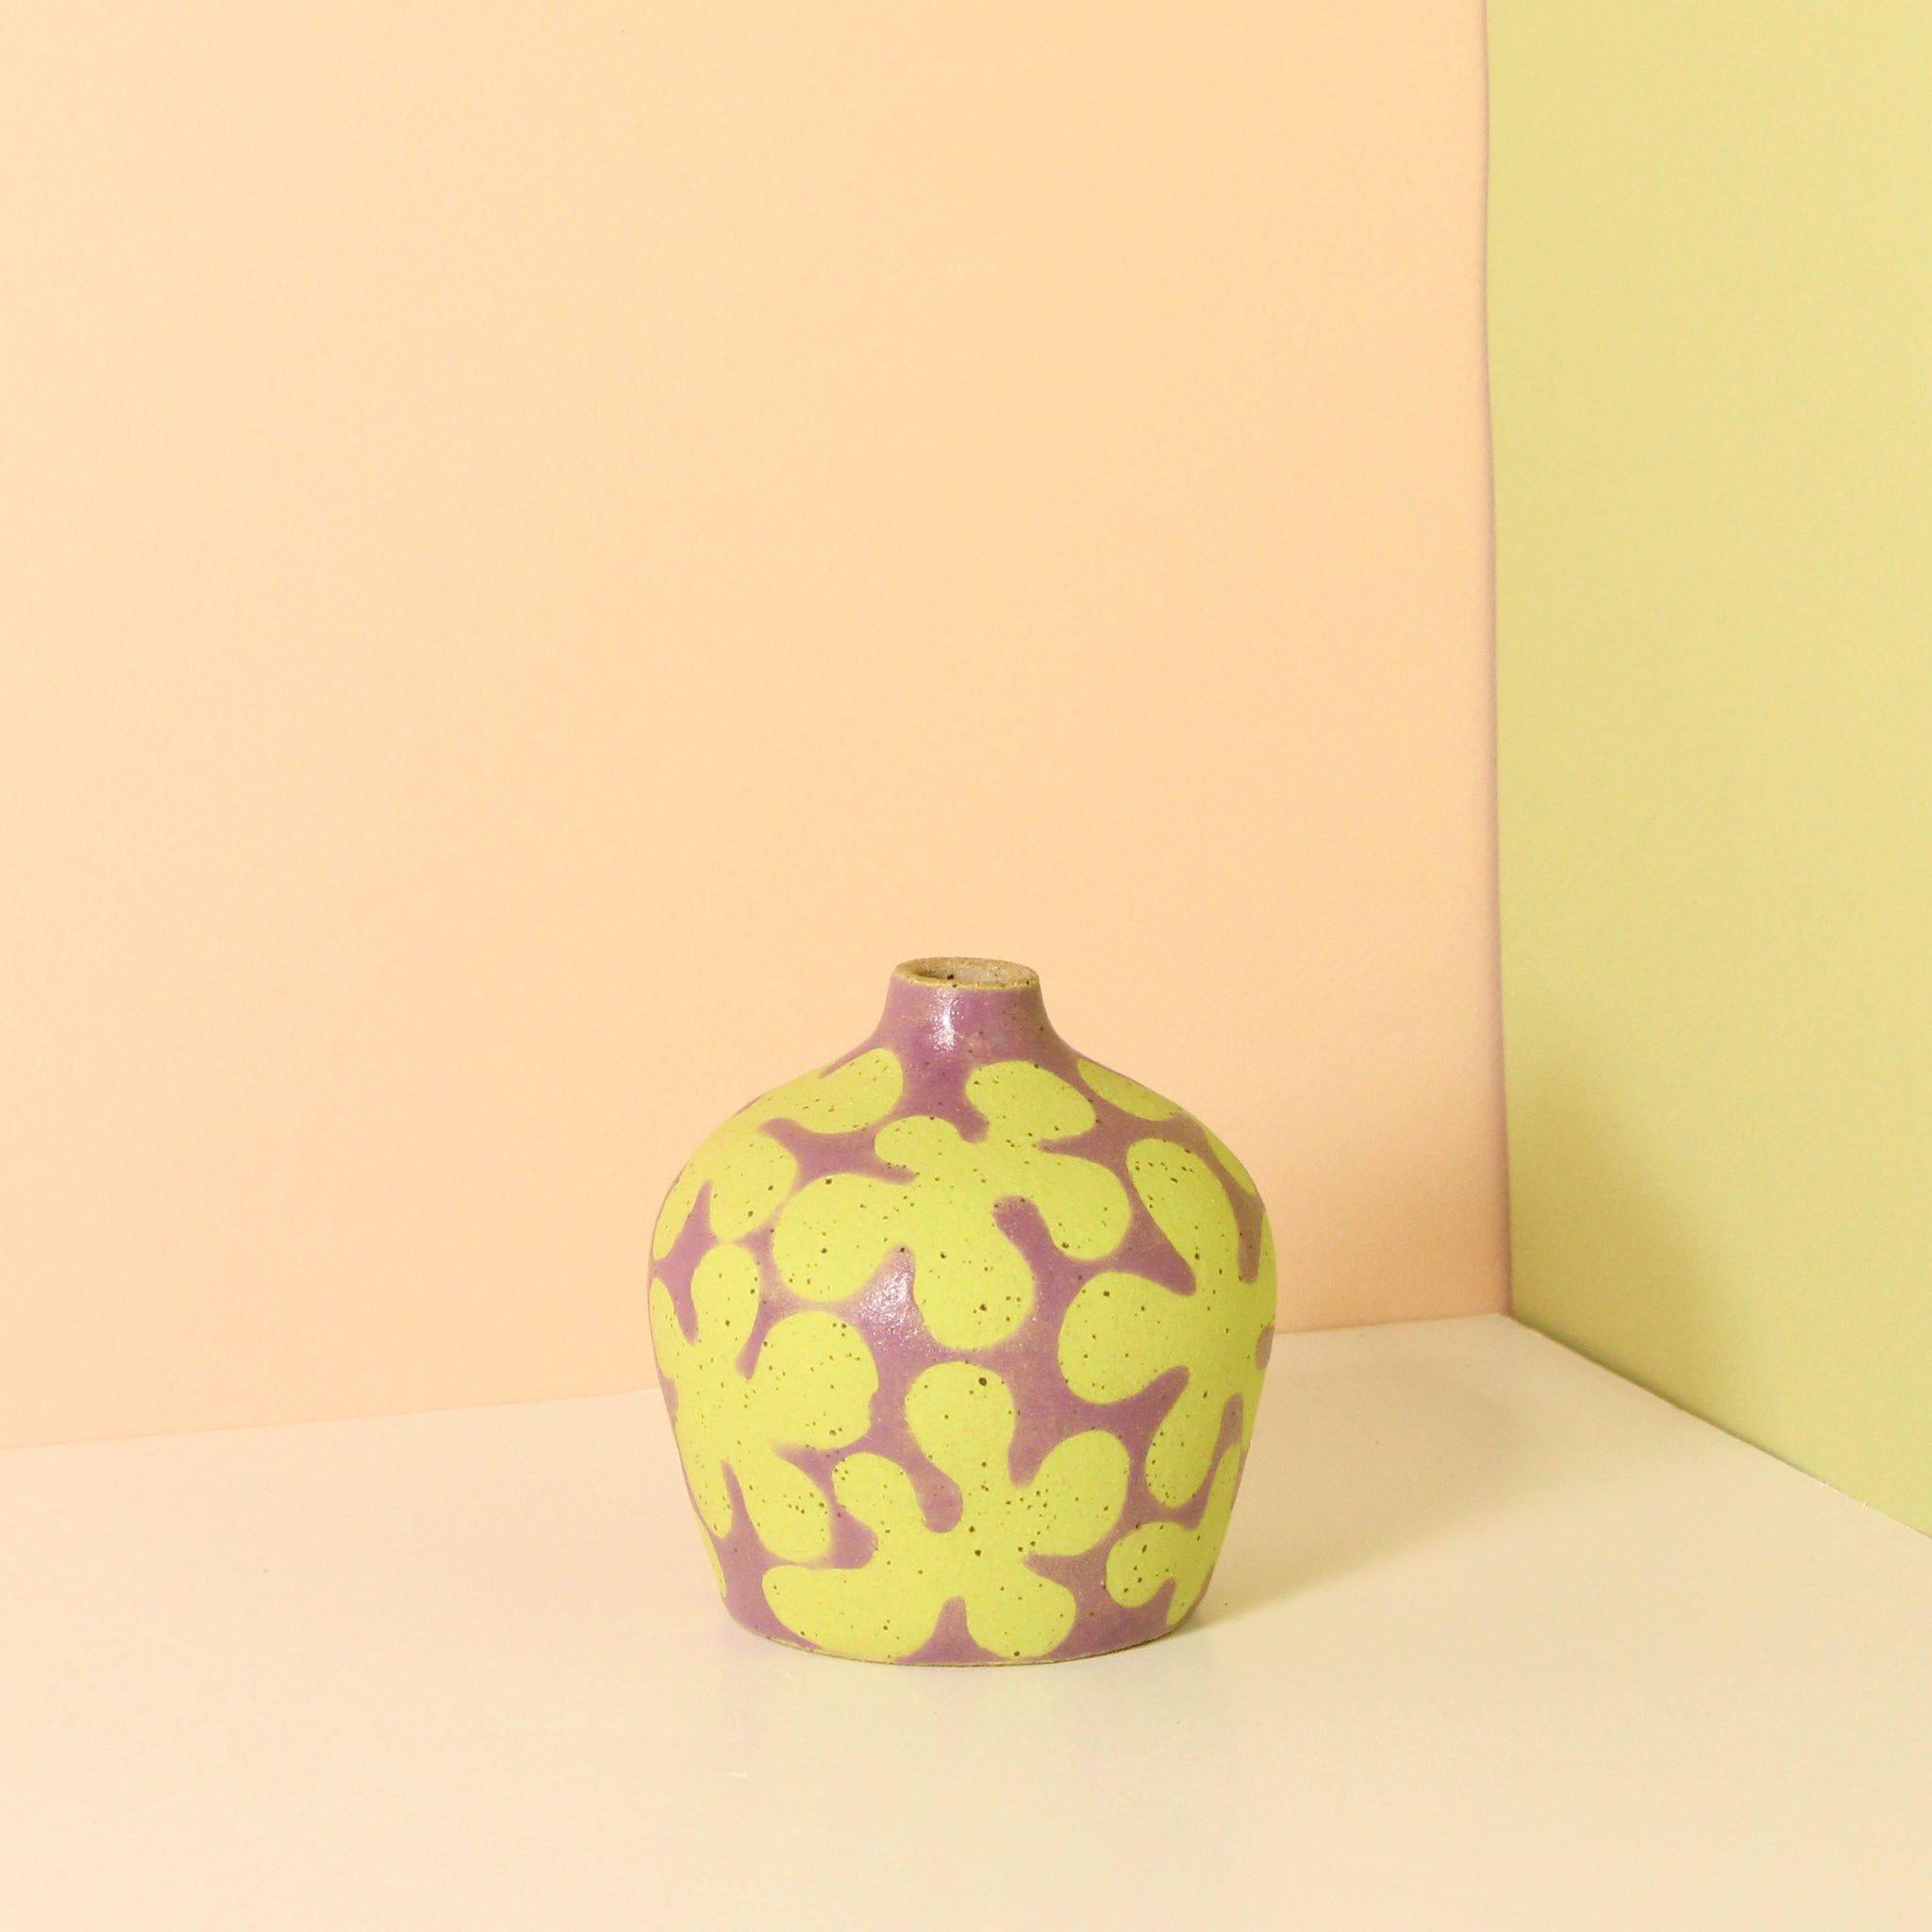 Glazed Stoneware Bud Vase with Scalloped Flower Pattern